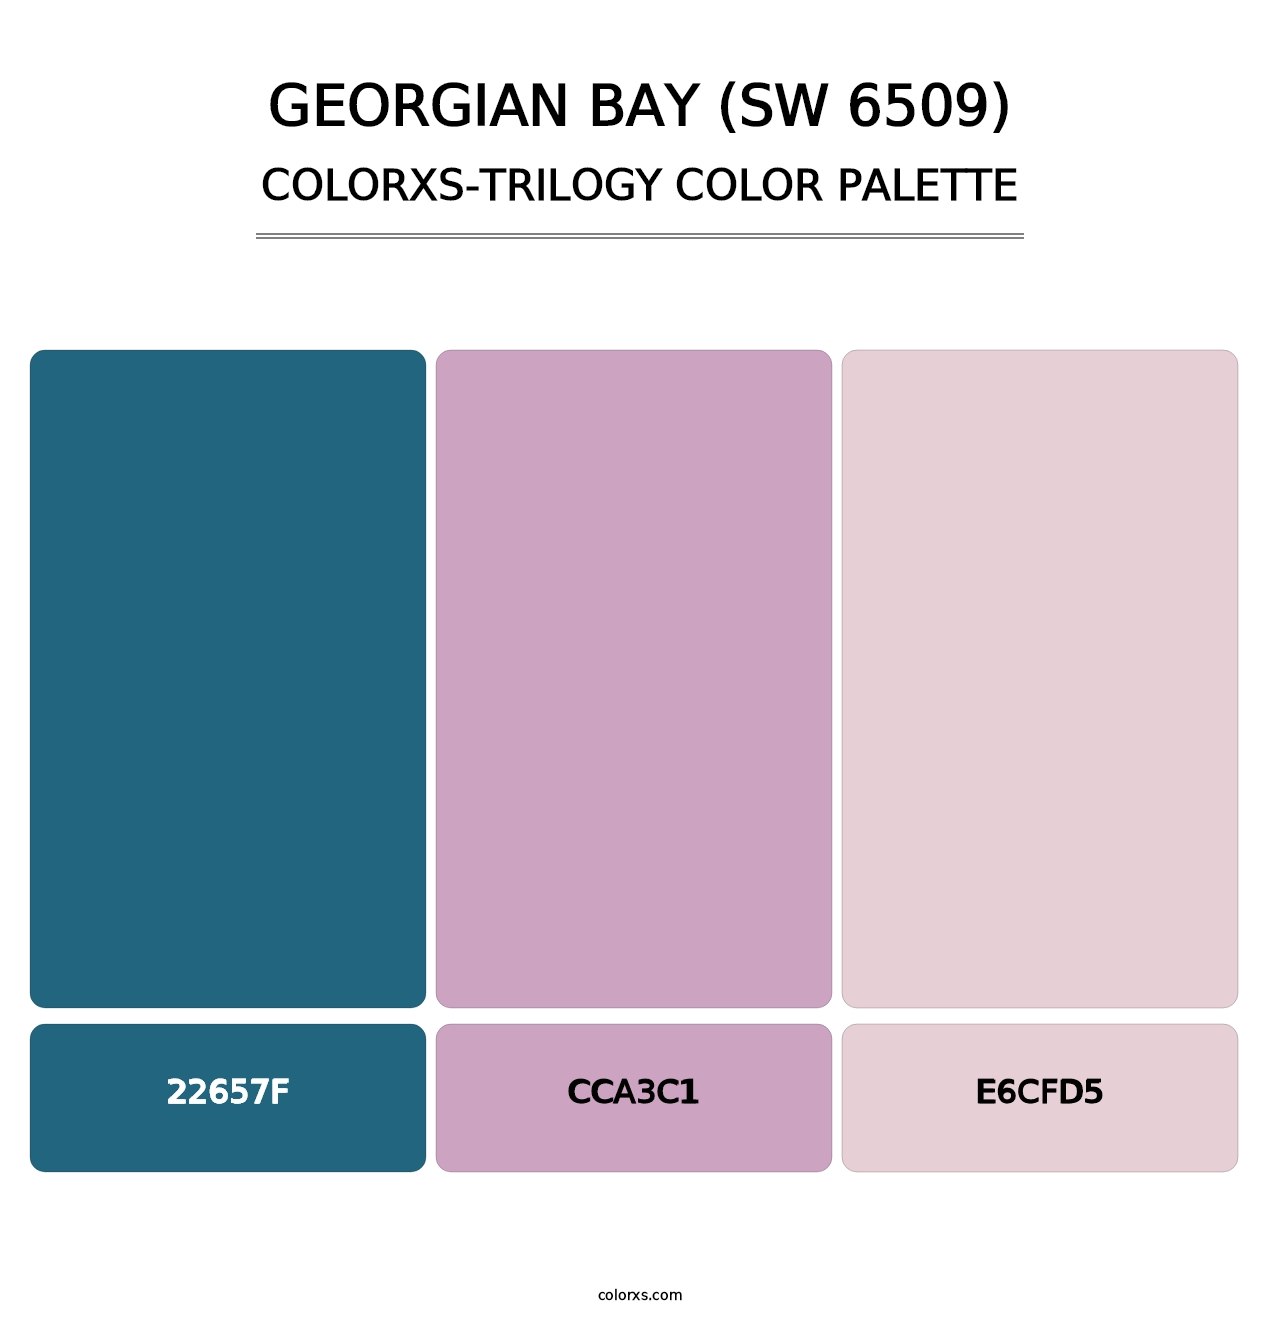 Georgian Bay (SW 6509) - Colorxs Trilogy Palette